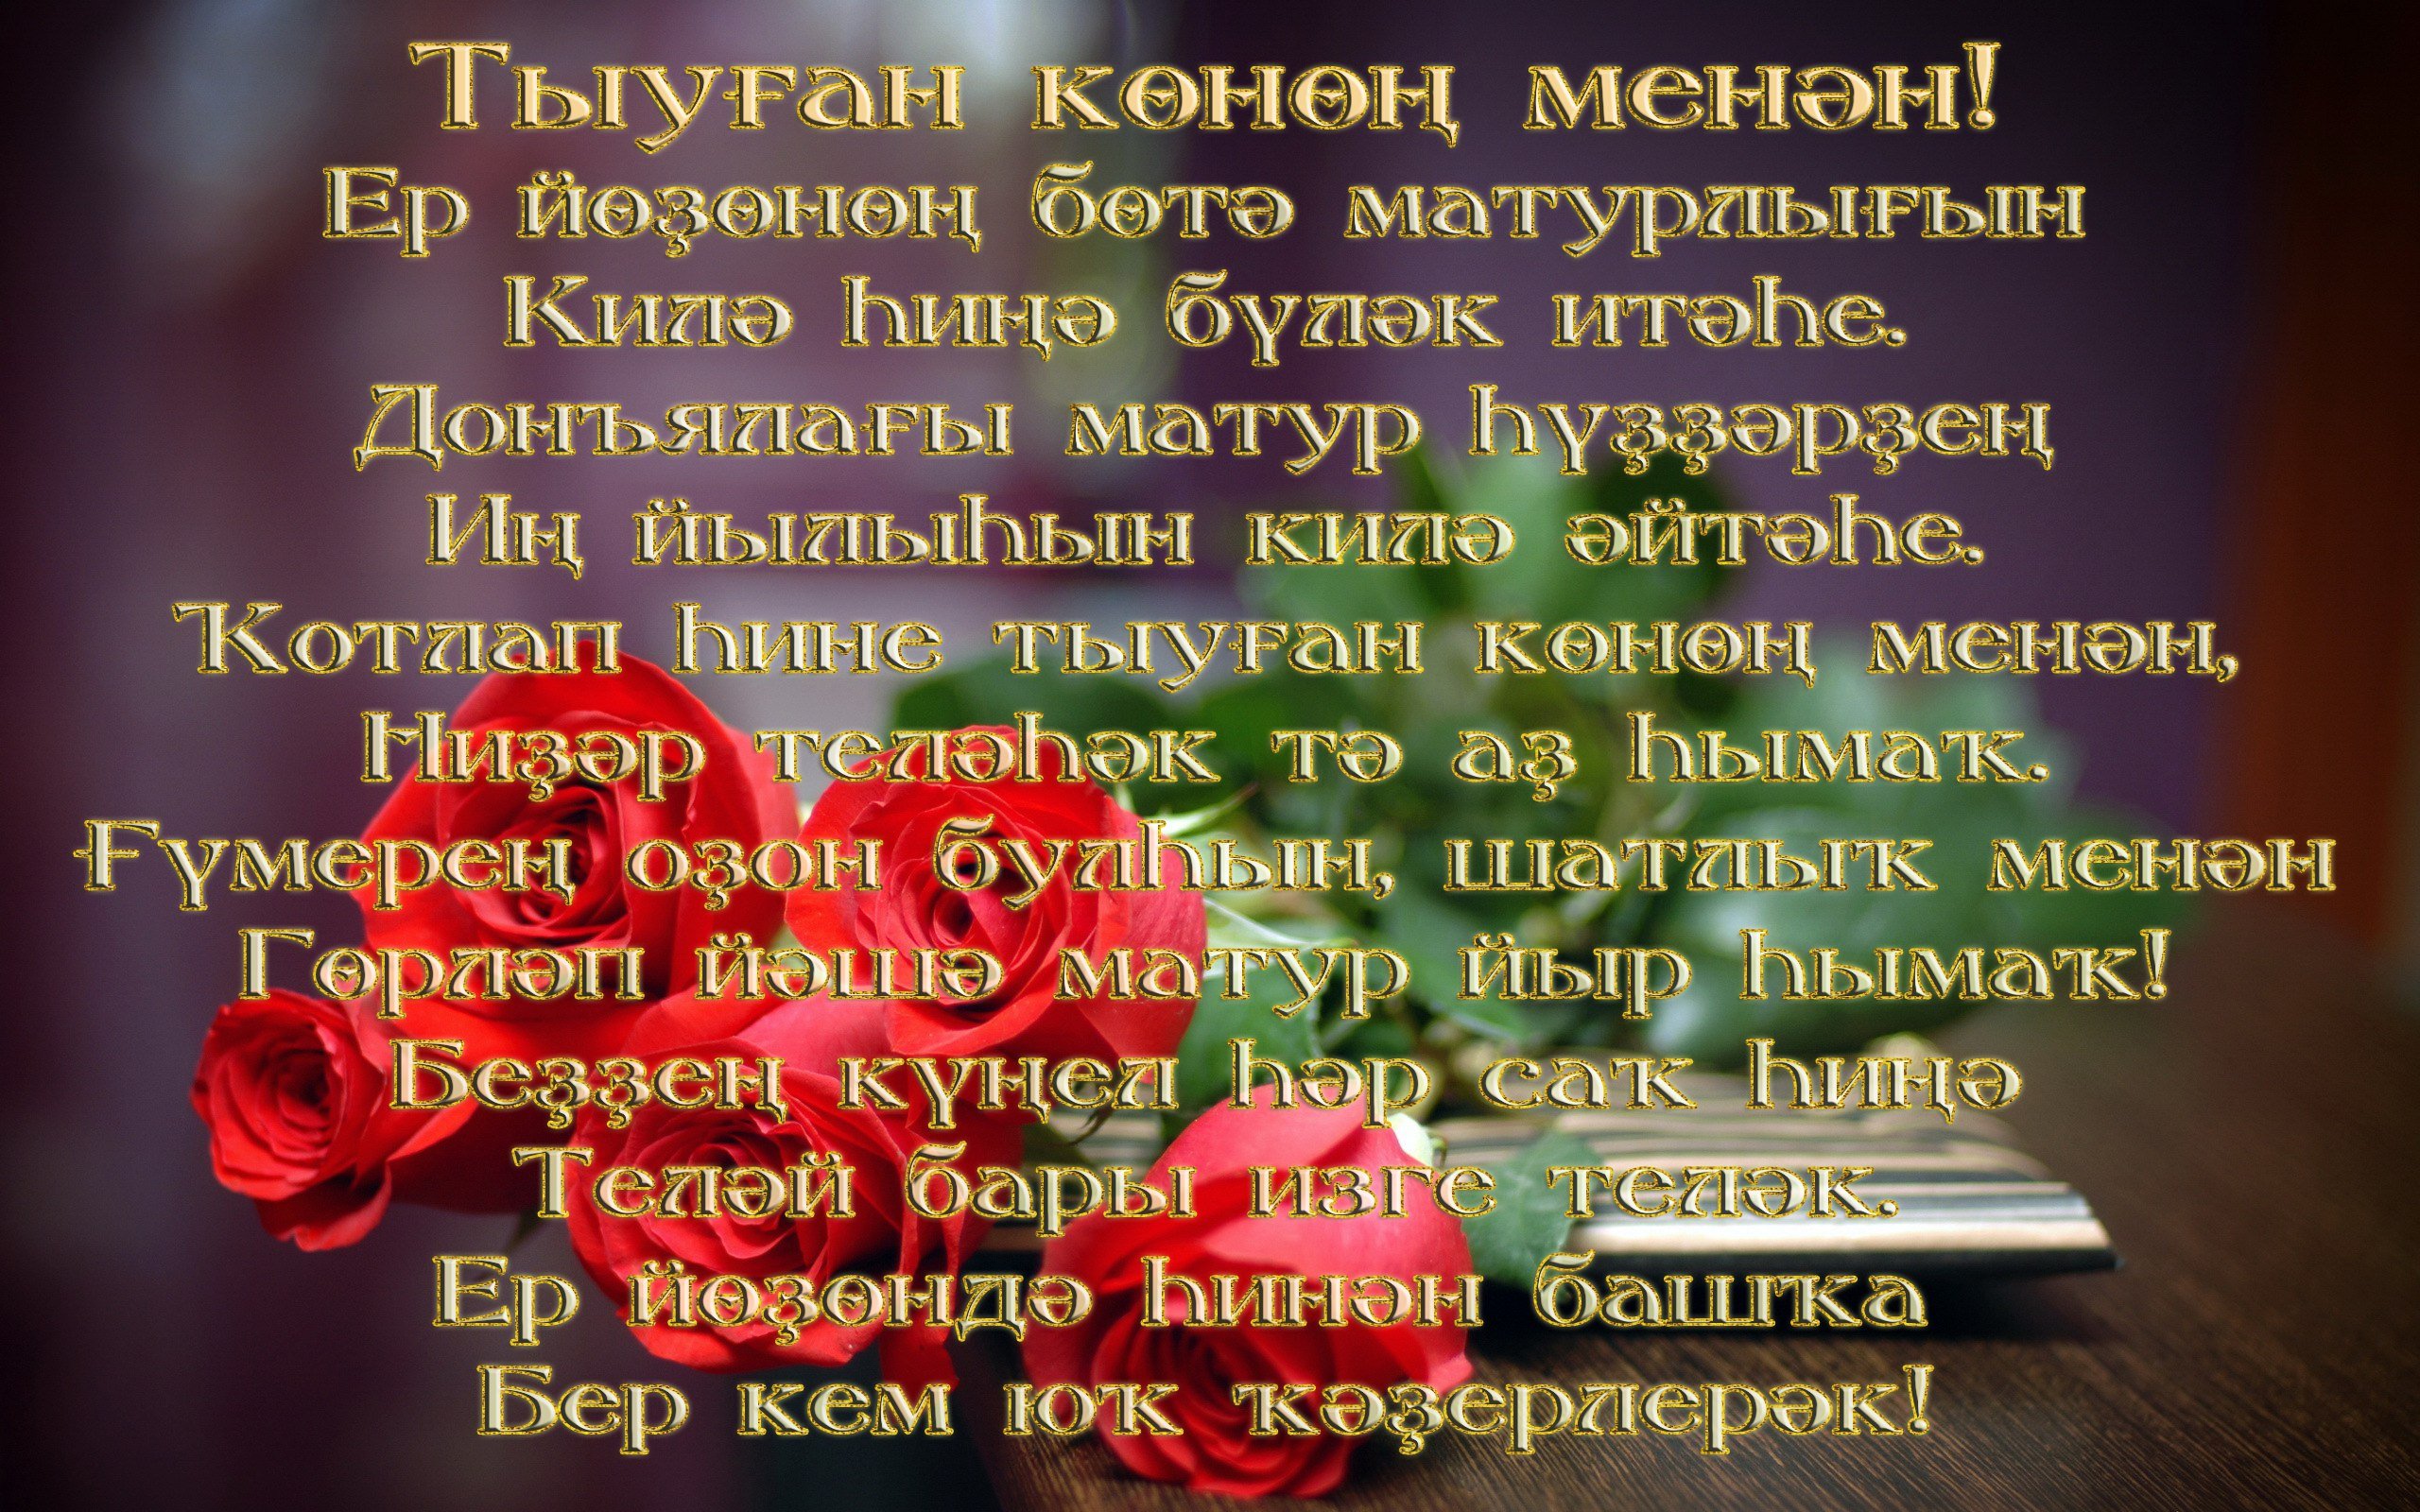 Поздравление сестре на башкирском языке. Поздравления на башкирском. Поздравления с днём рождения на башкирском языке. Поздравления башкирском языке женщине. Поздравление с юбилеем на башкирском.